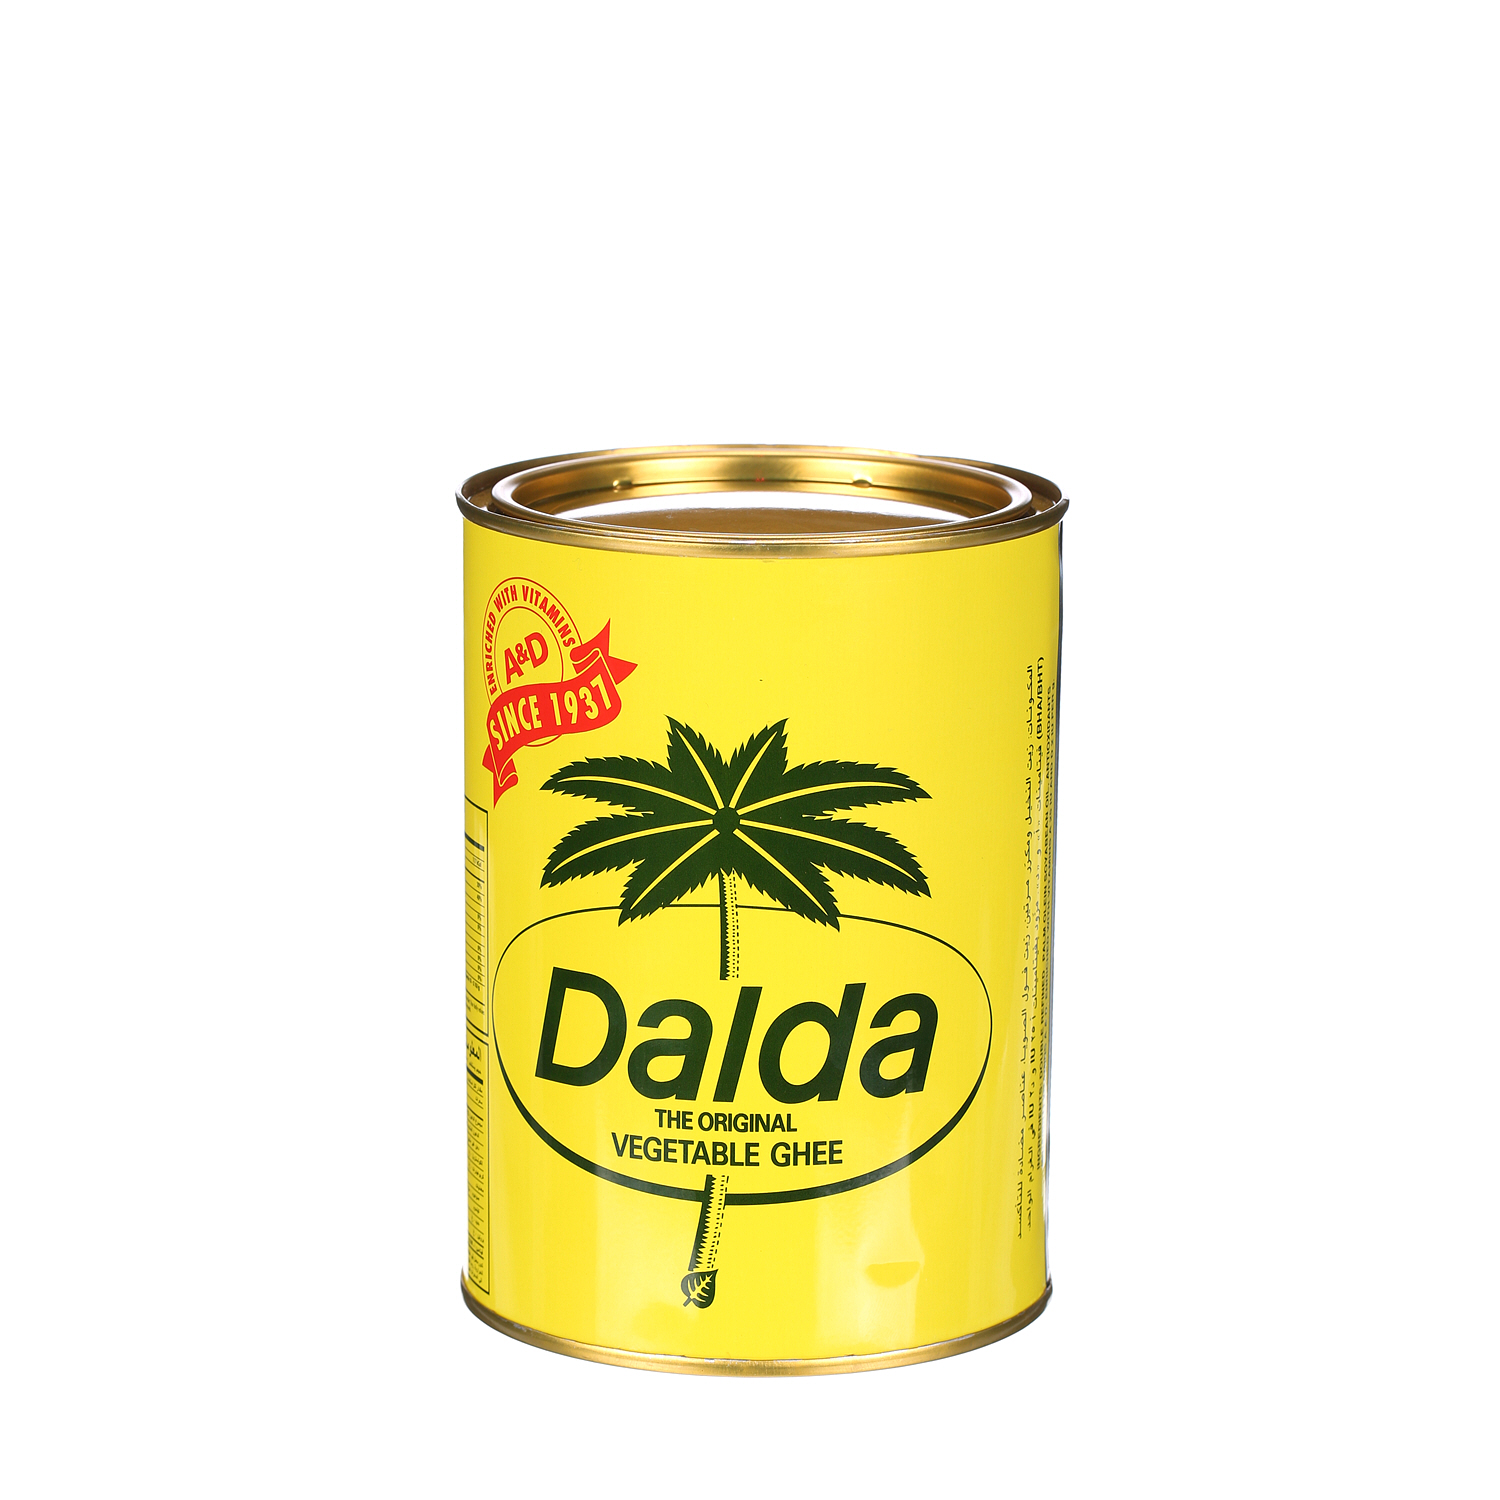 Dalda Vegetable Ghee 1Kg